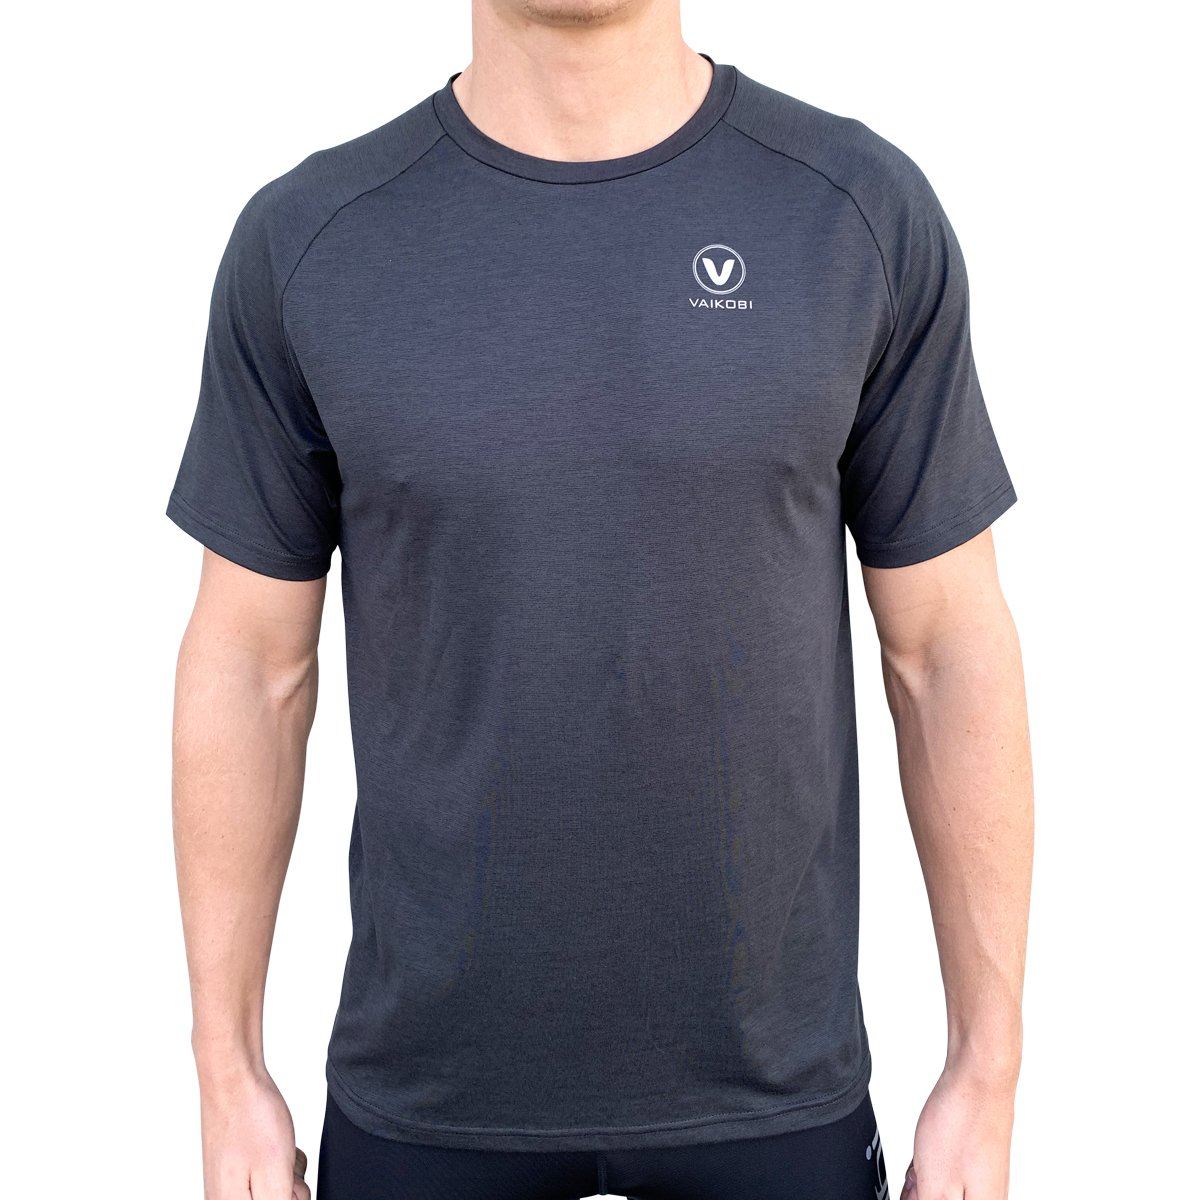 Vaikobi UV Performance Tech T-Shirt, Herre